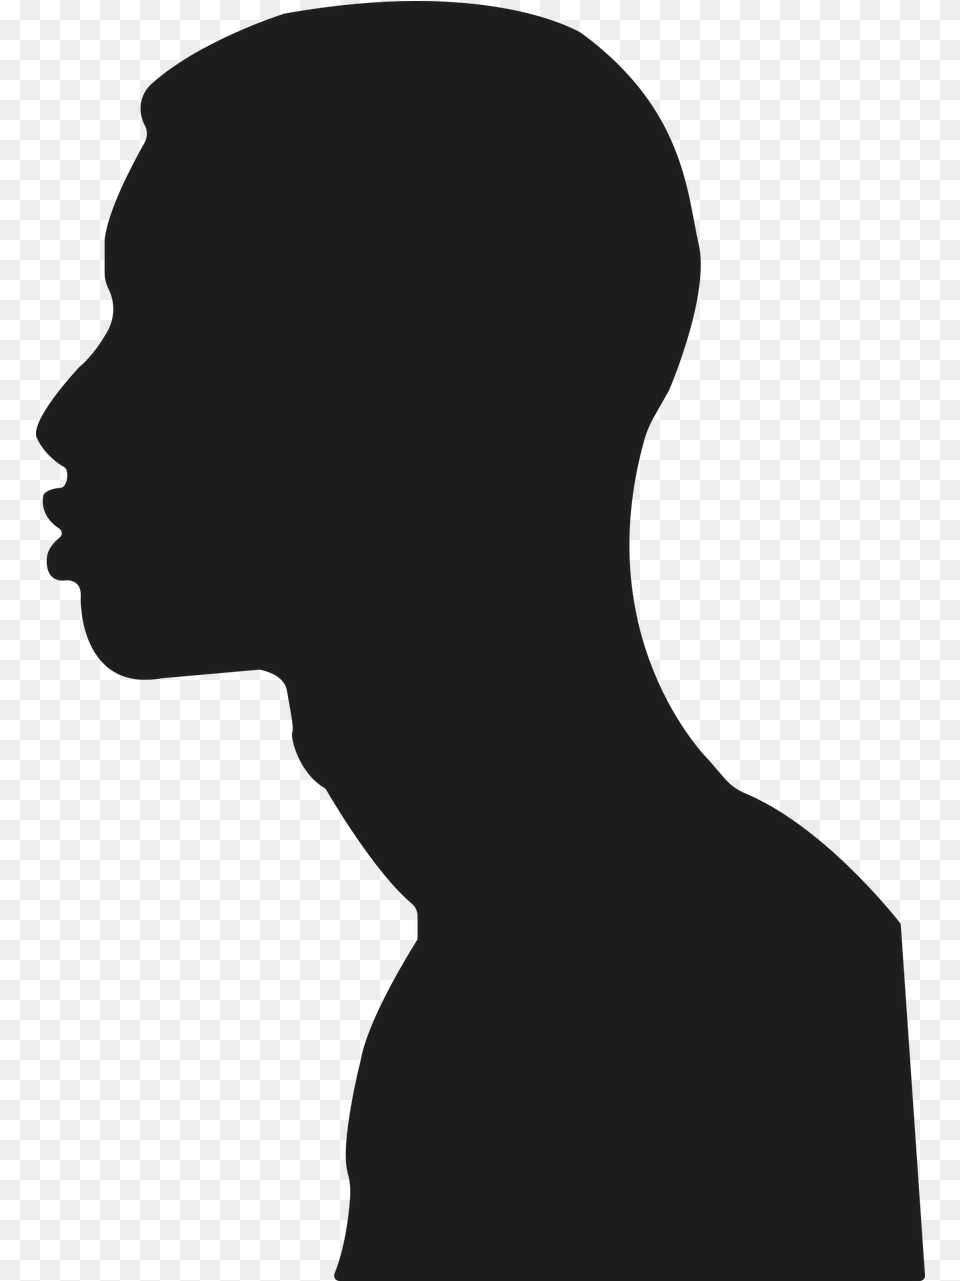 Person Shadow Dark Sombra De Persona De Perfil, Body Part, Face, Head, Neck Png Image